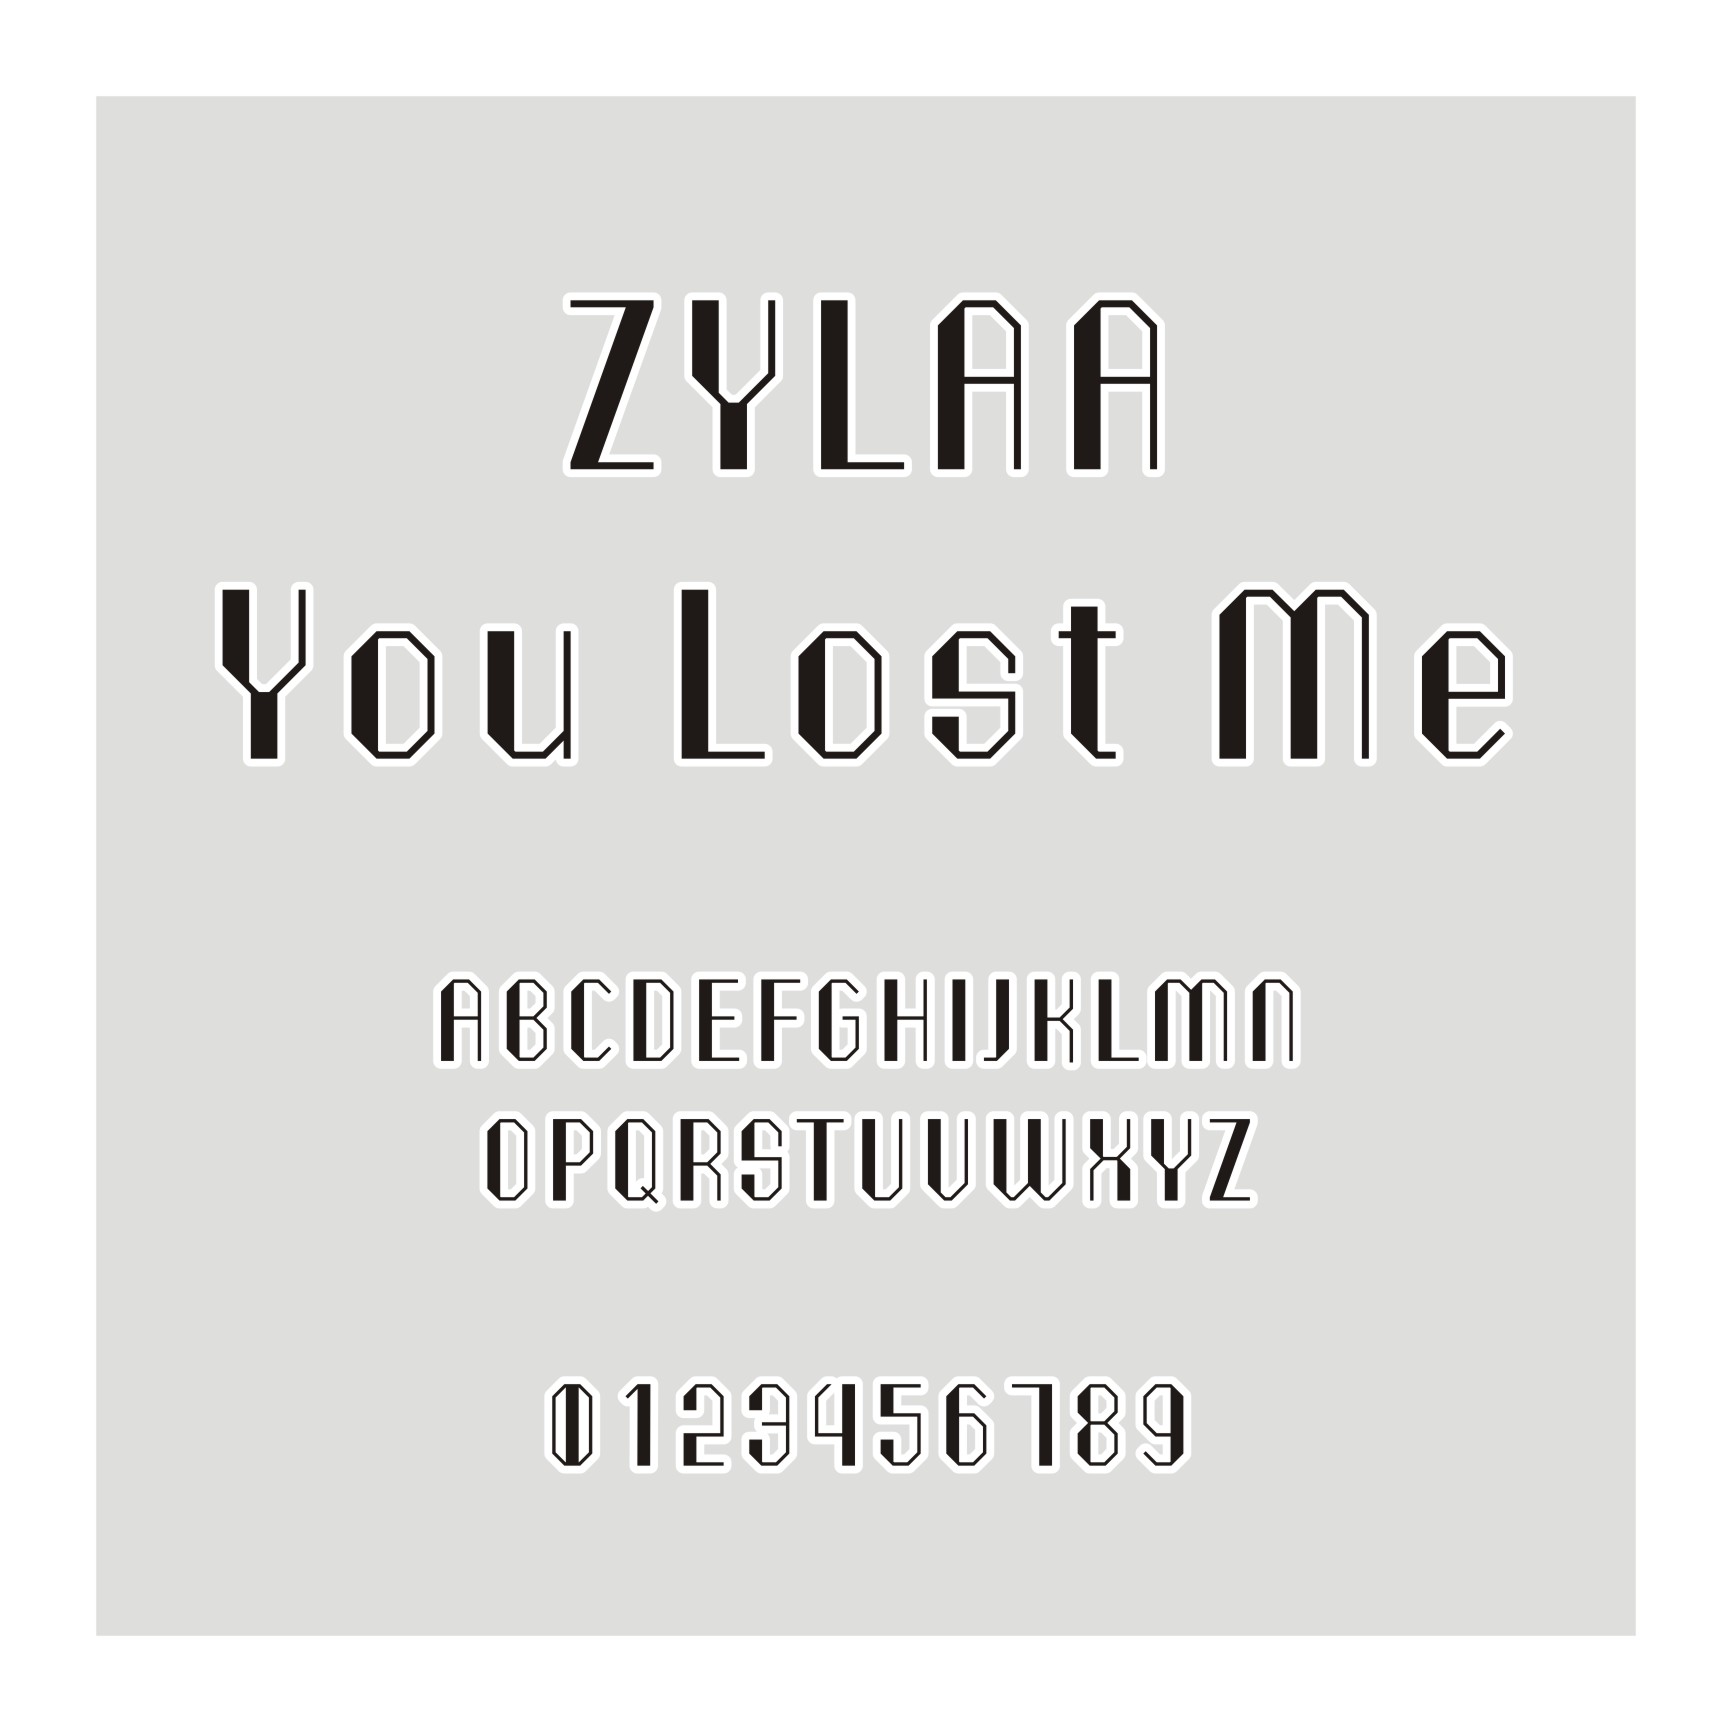 ZYLAA You Lost Me